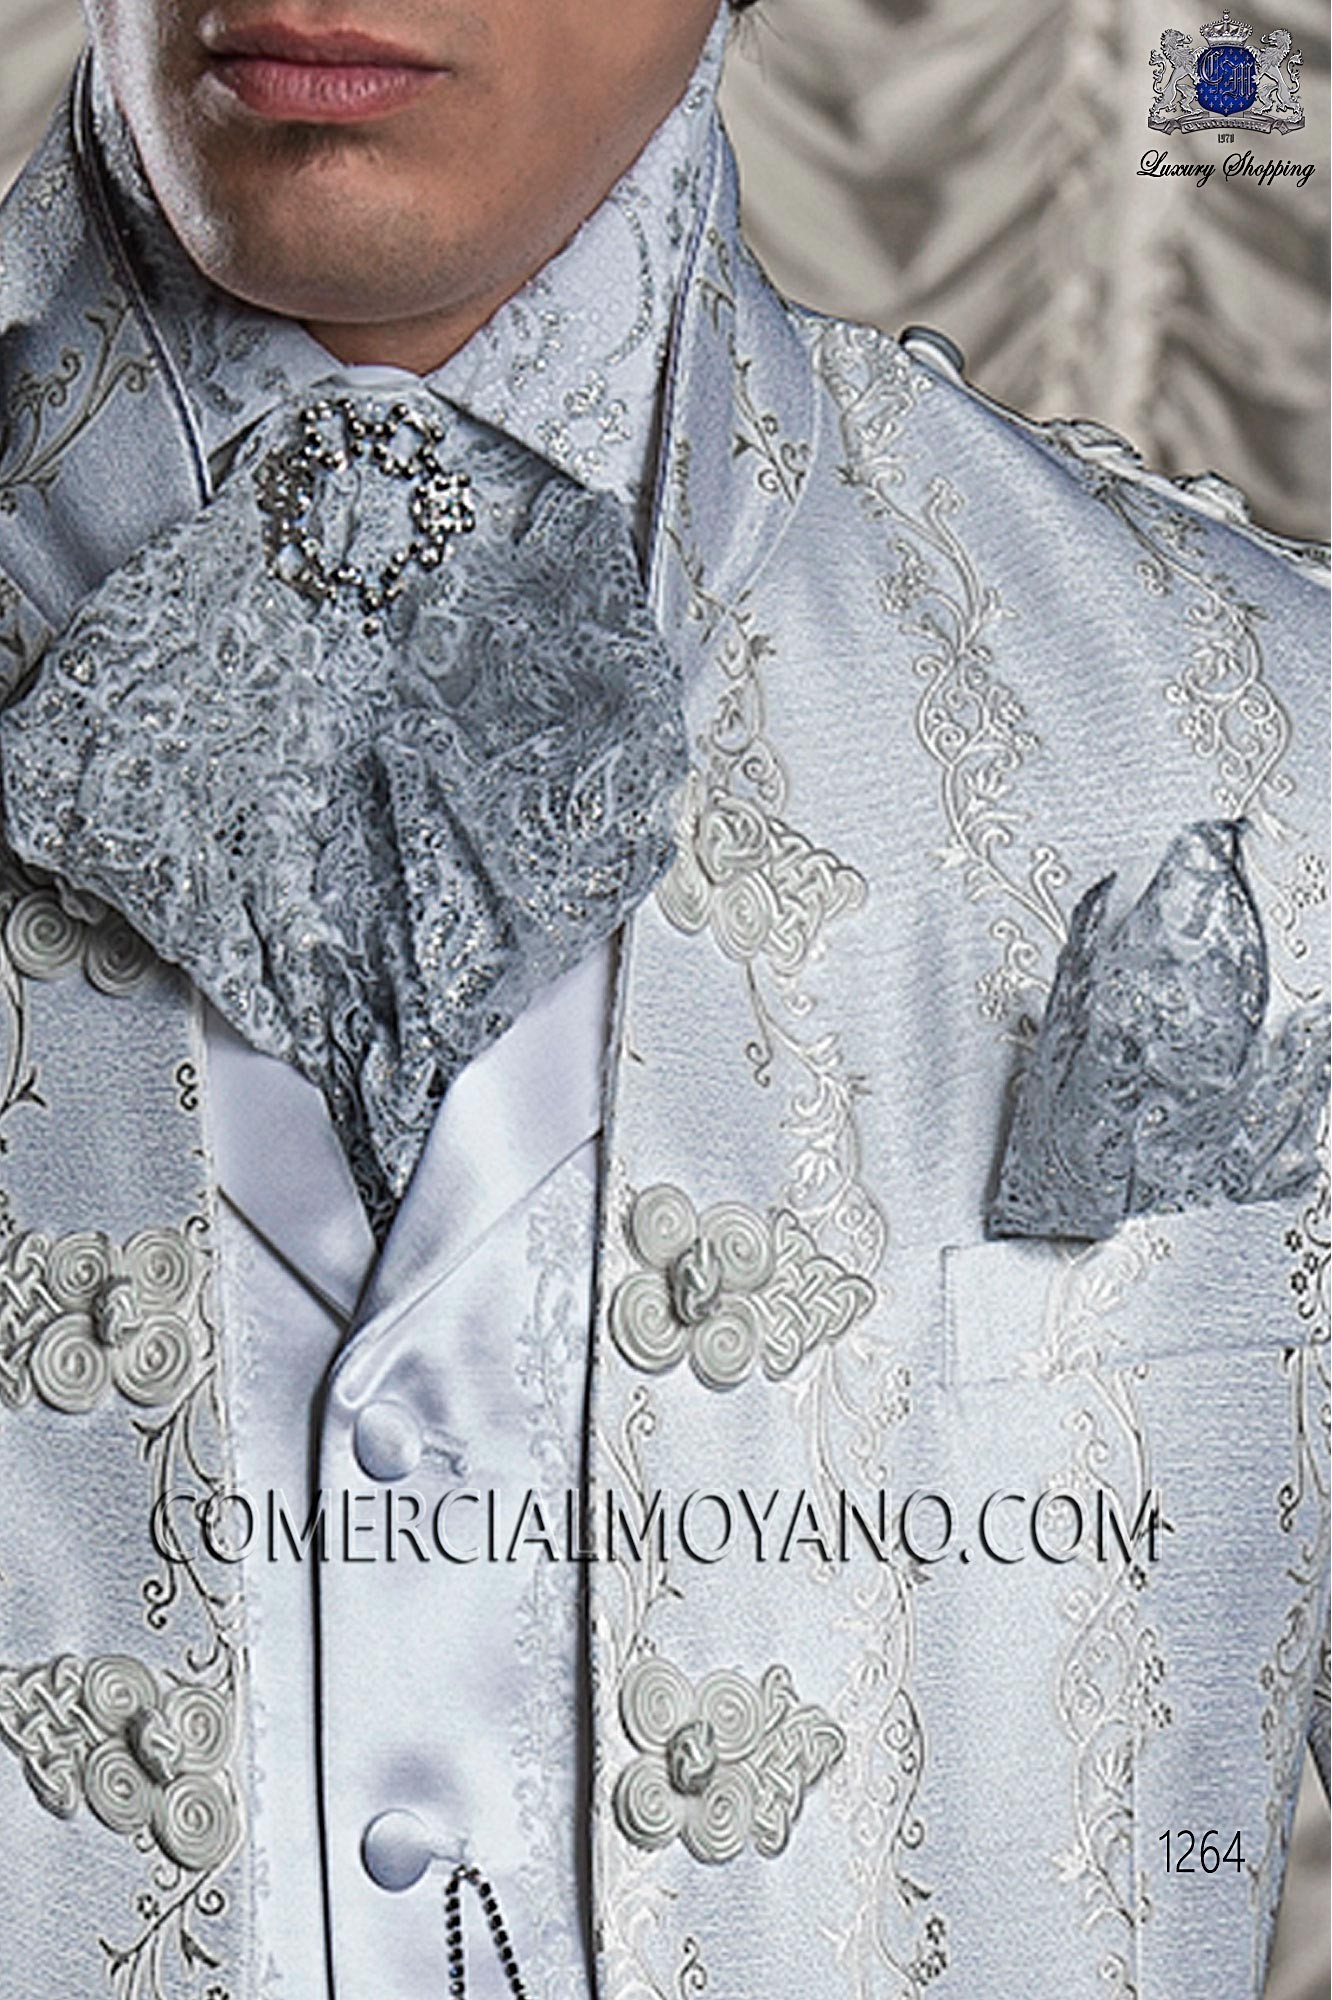 Silver handkerchief, Mario lace tie Moreno with Pre-tied